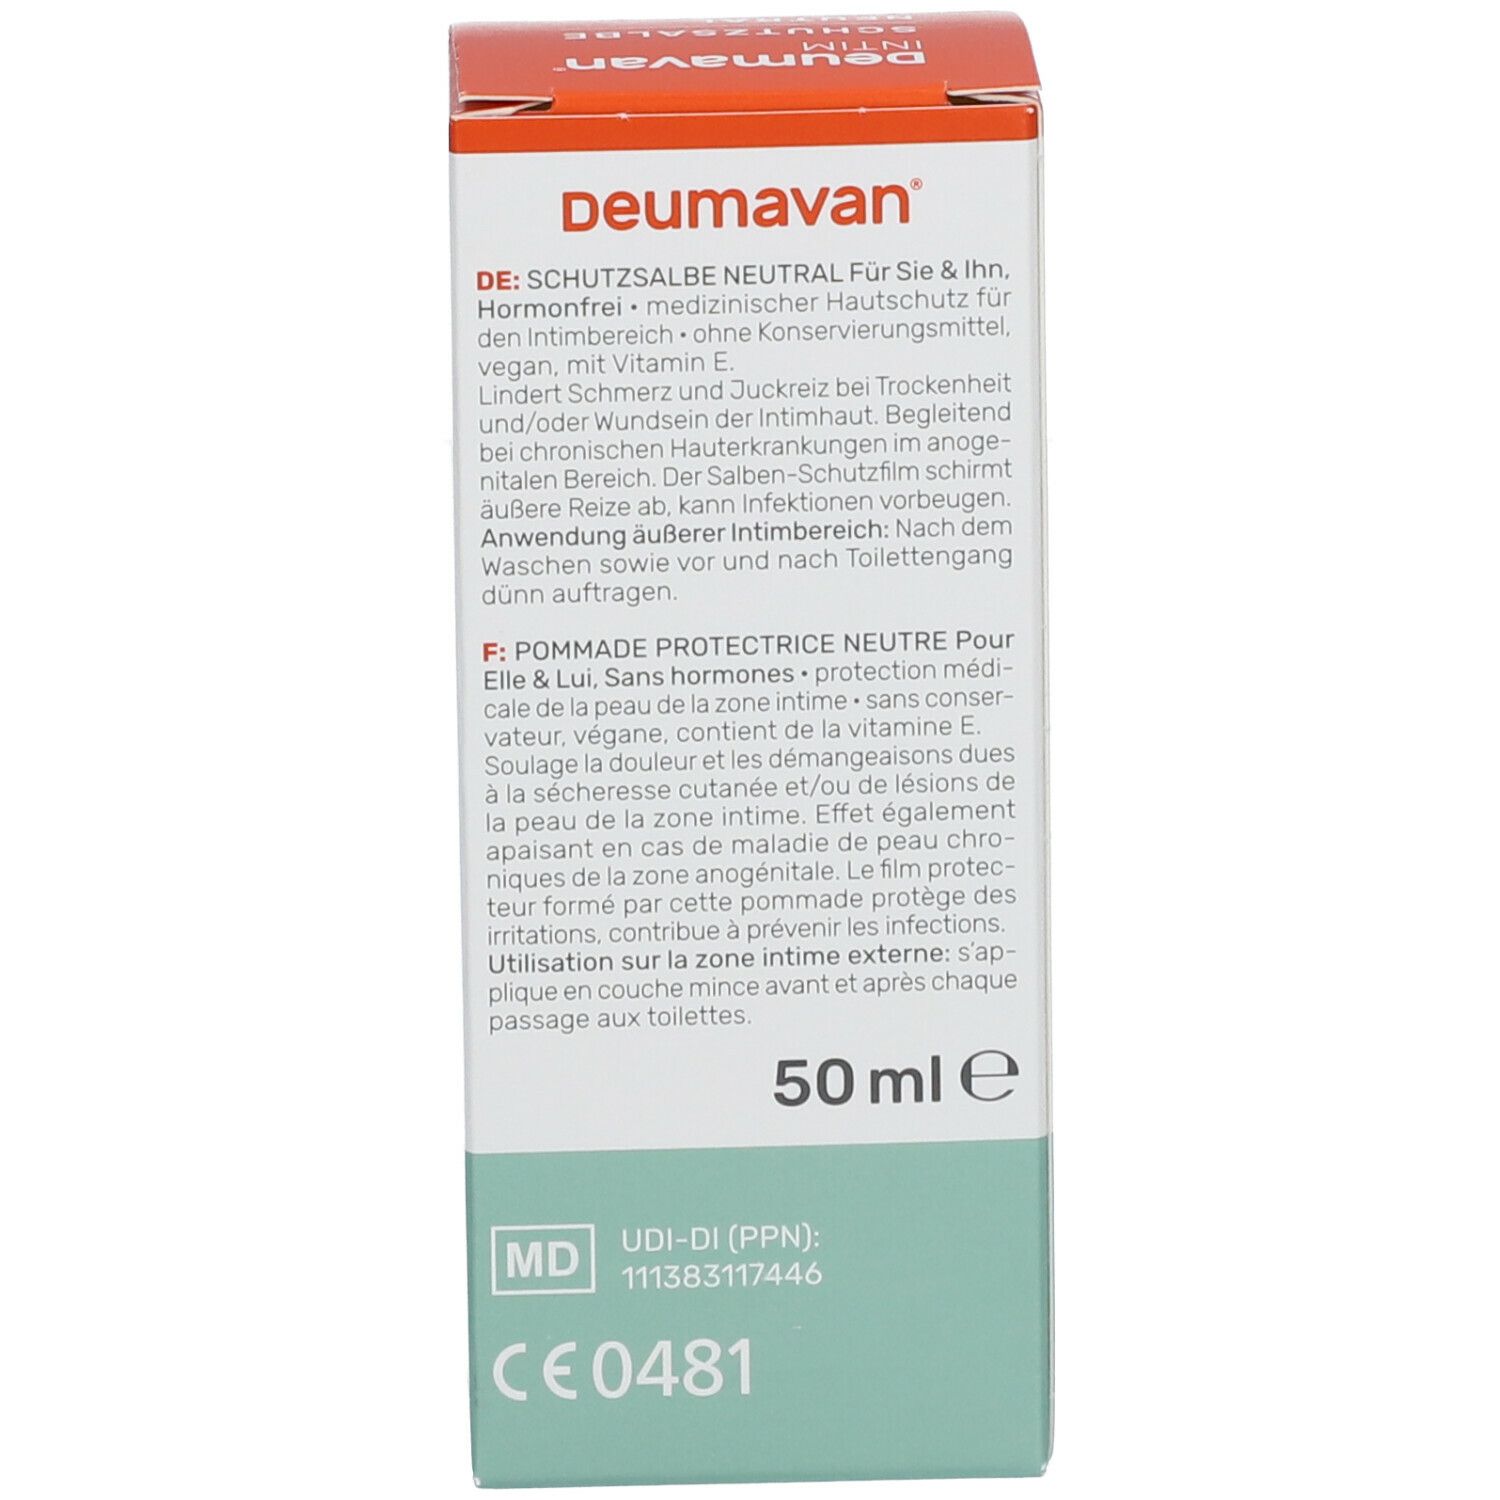 Deumavan® Pommade protectrice neutral